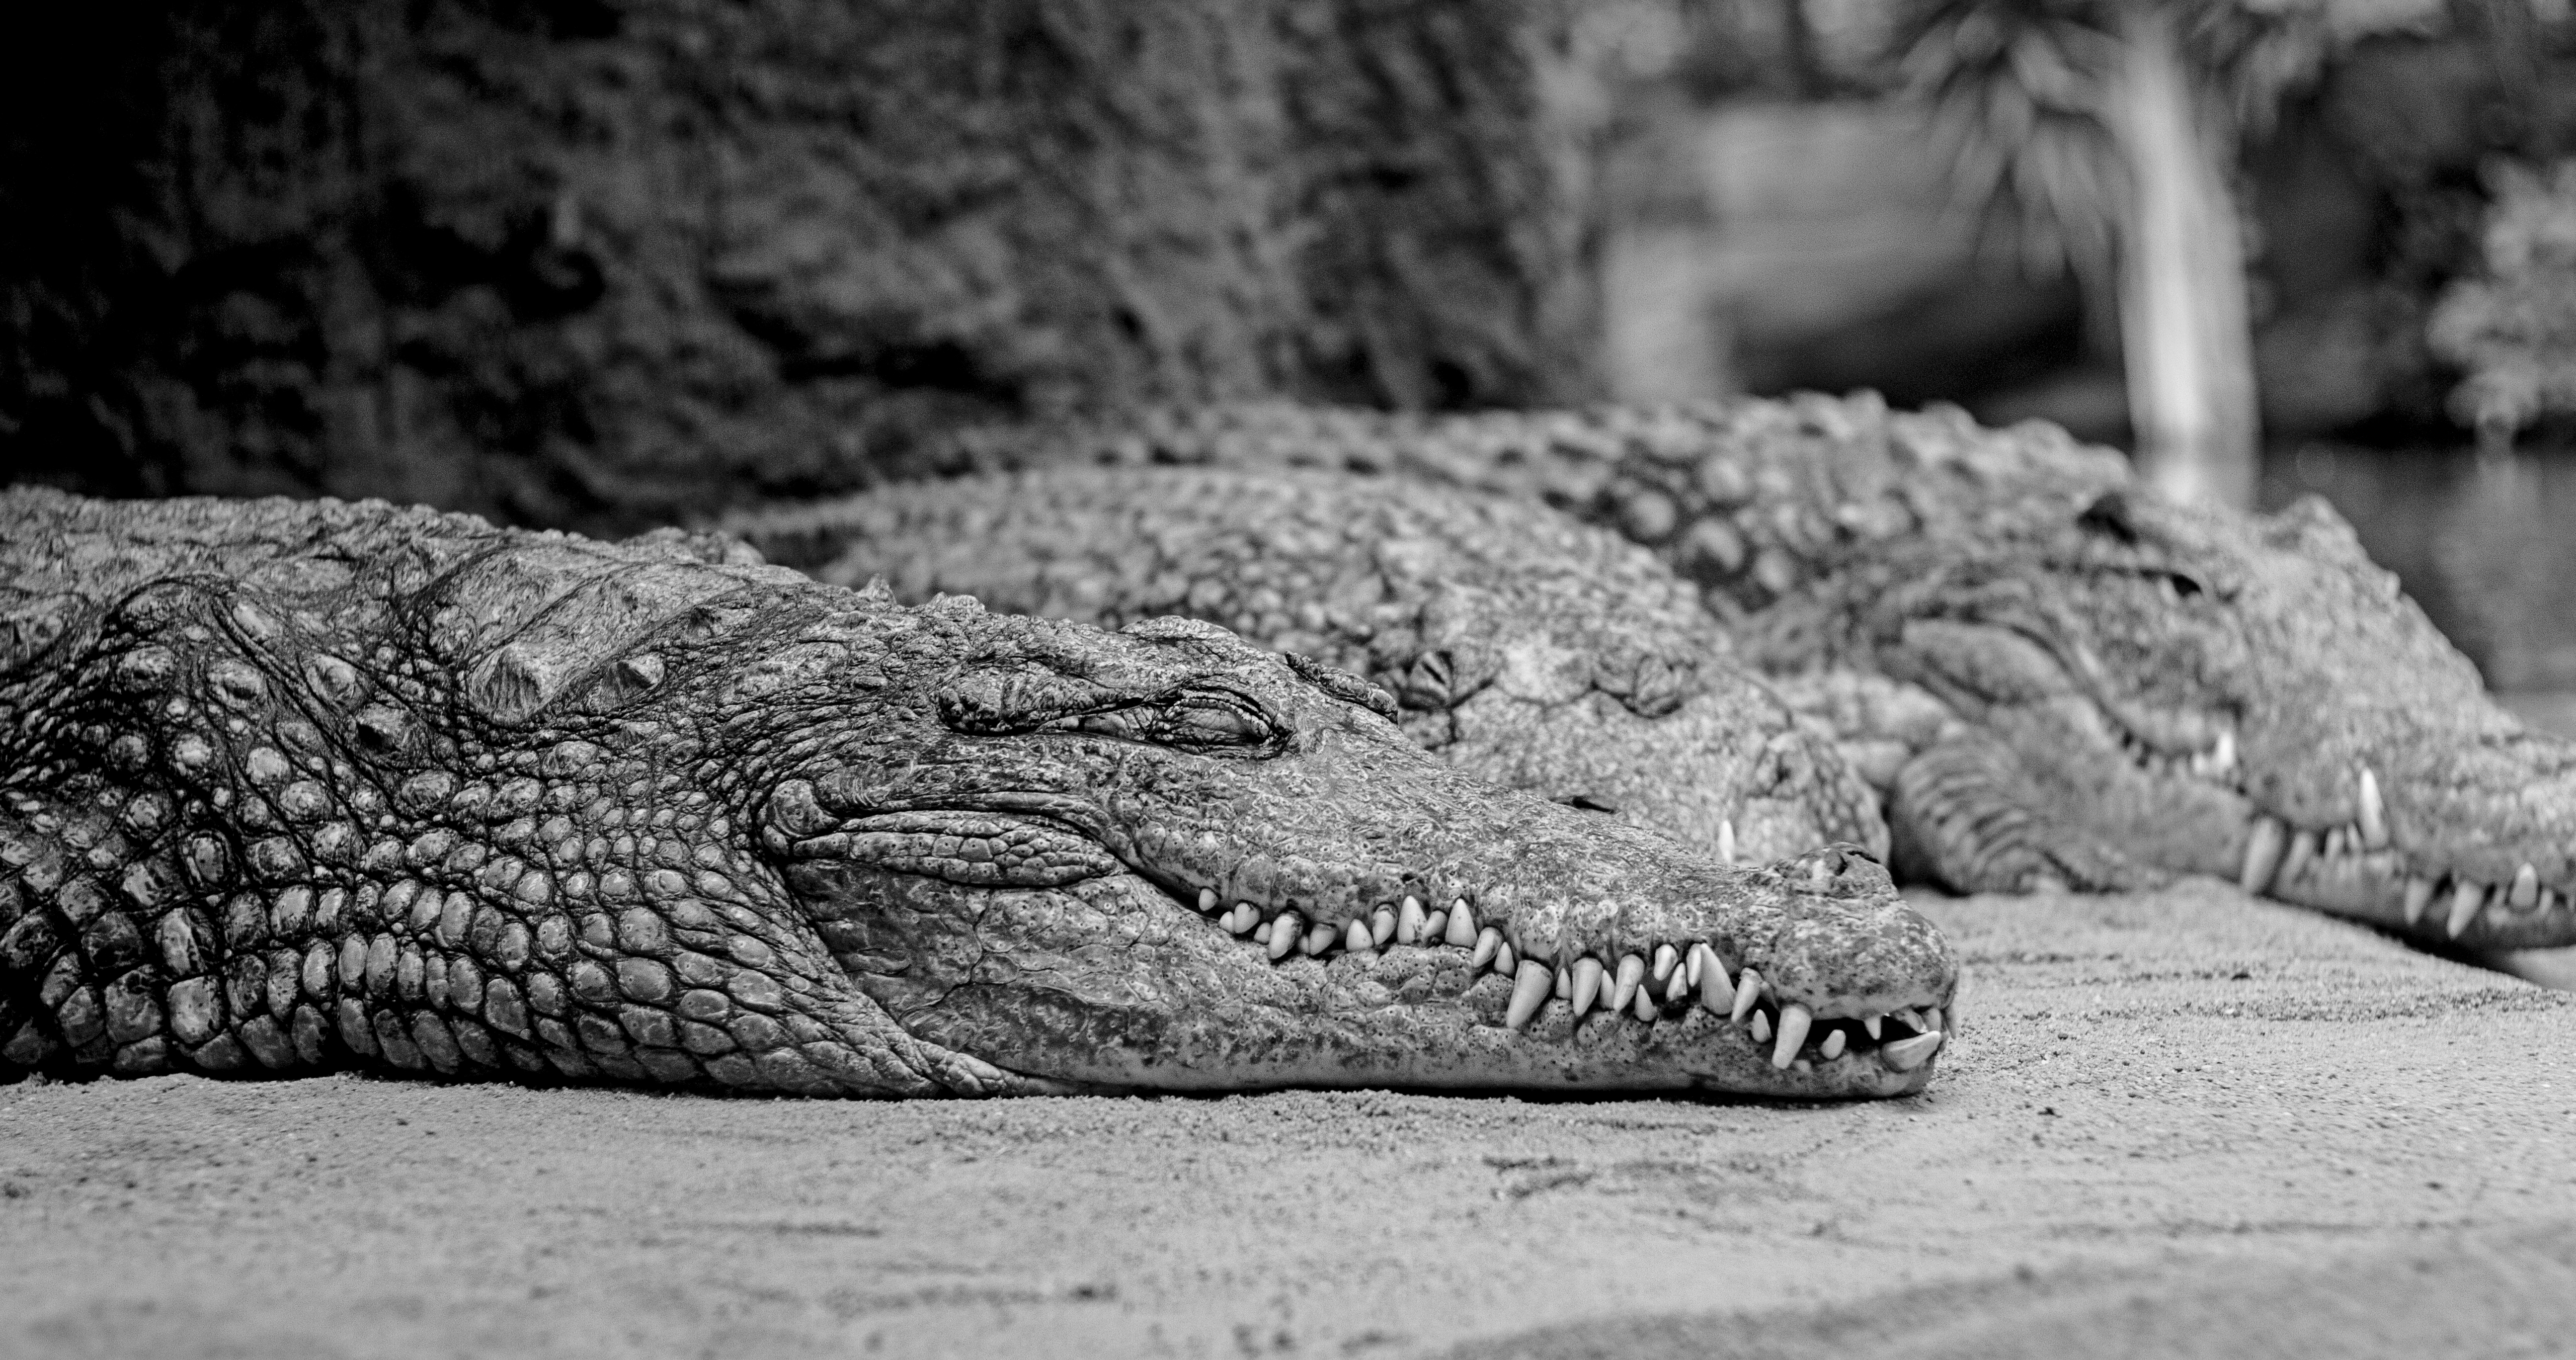 General 5184x2736 monochrome animals crocodiles reptiles